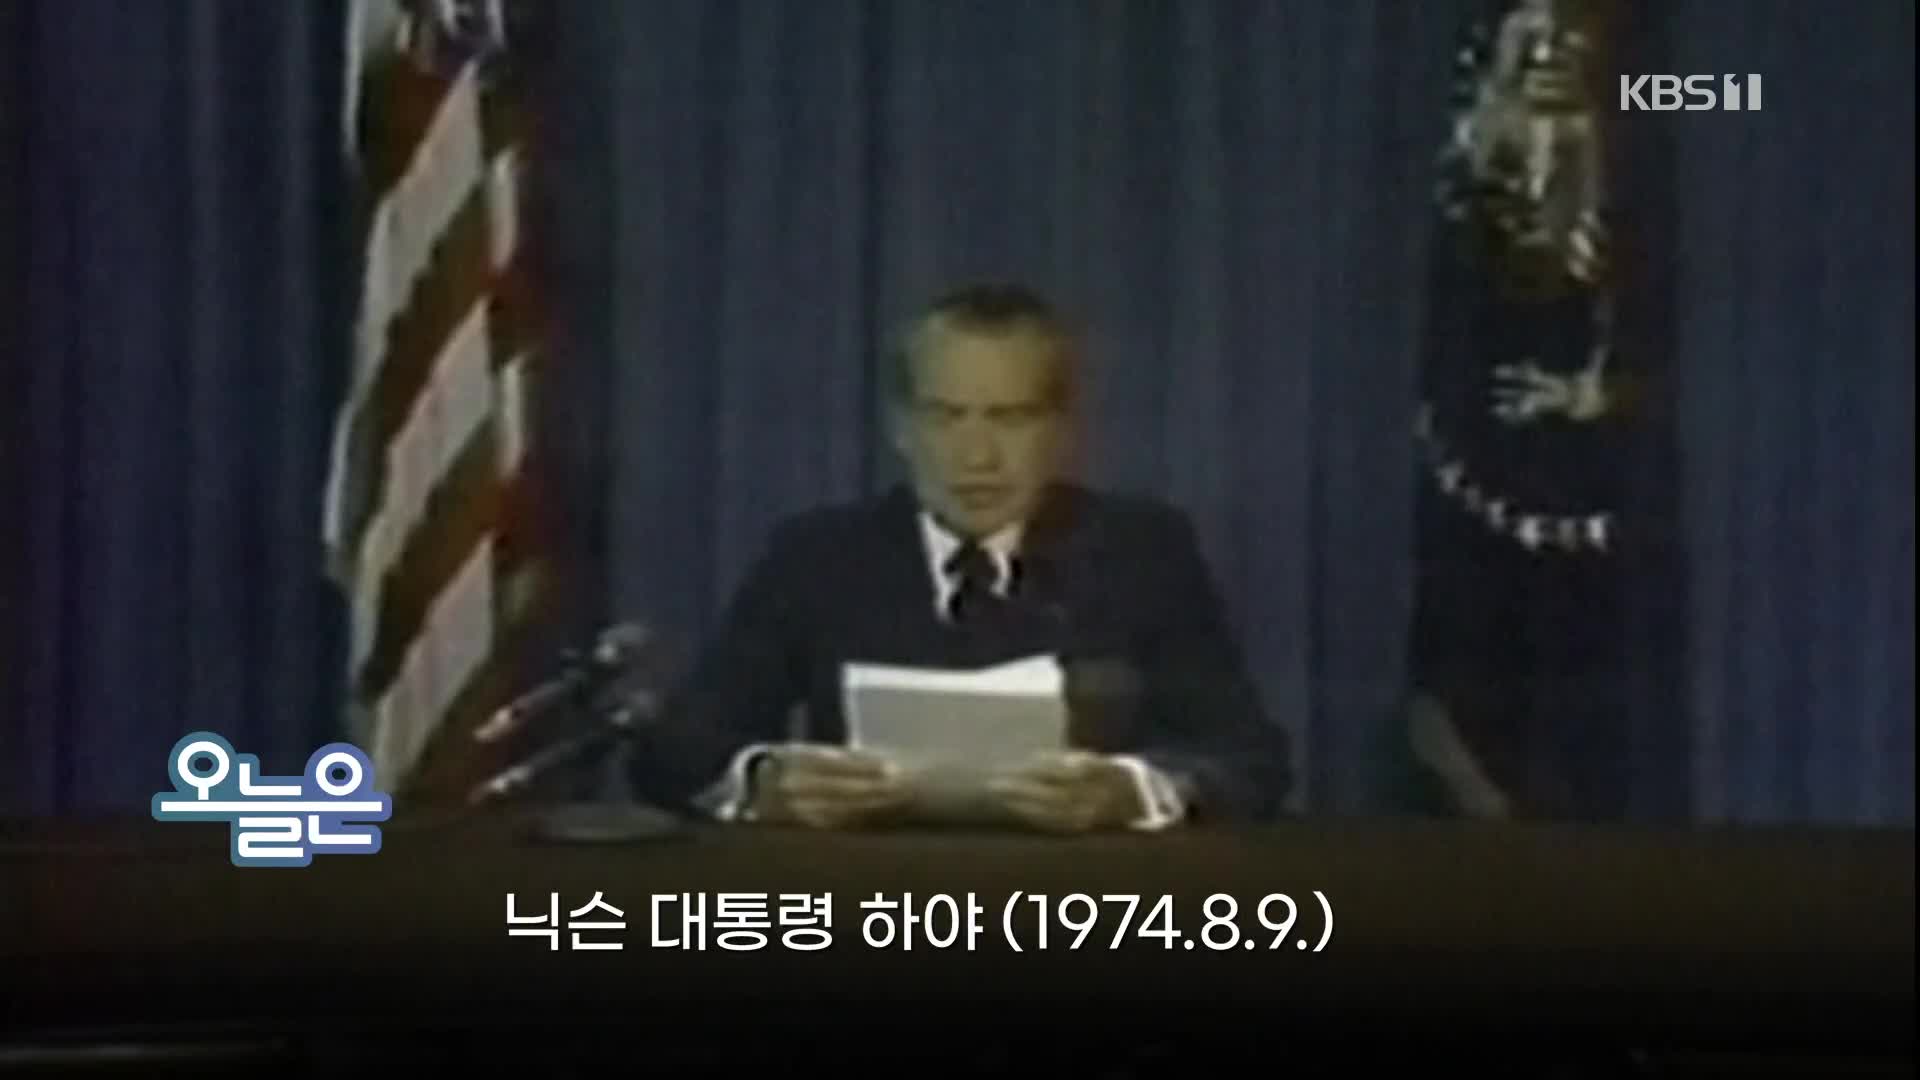 [오늘은] 닉슨 대통령 하야 (1974.8.9.)